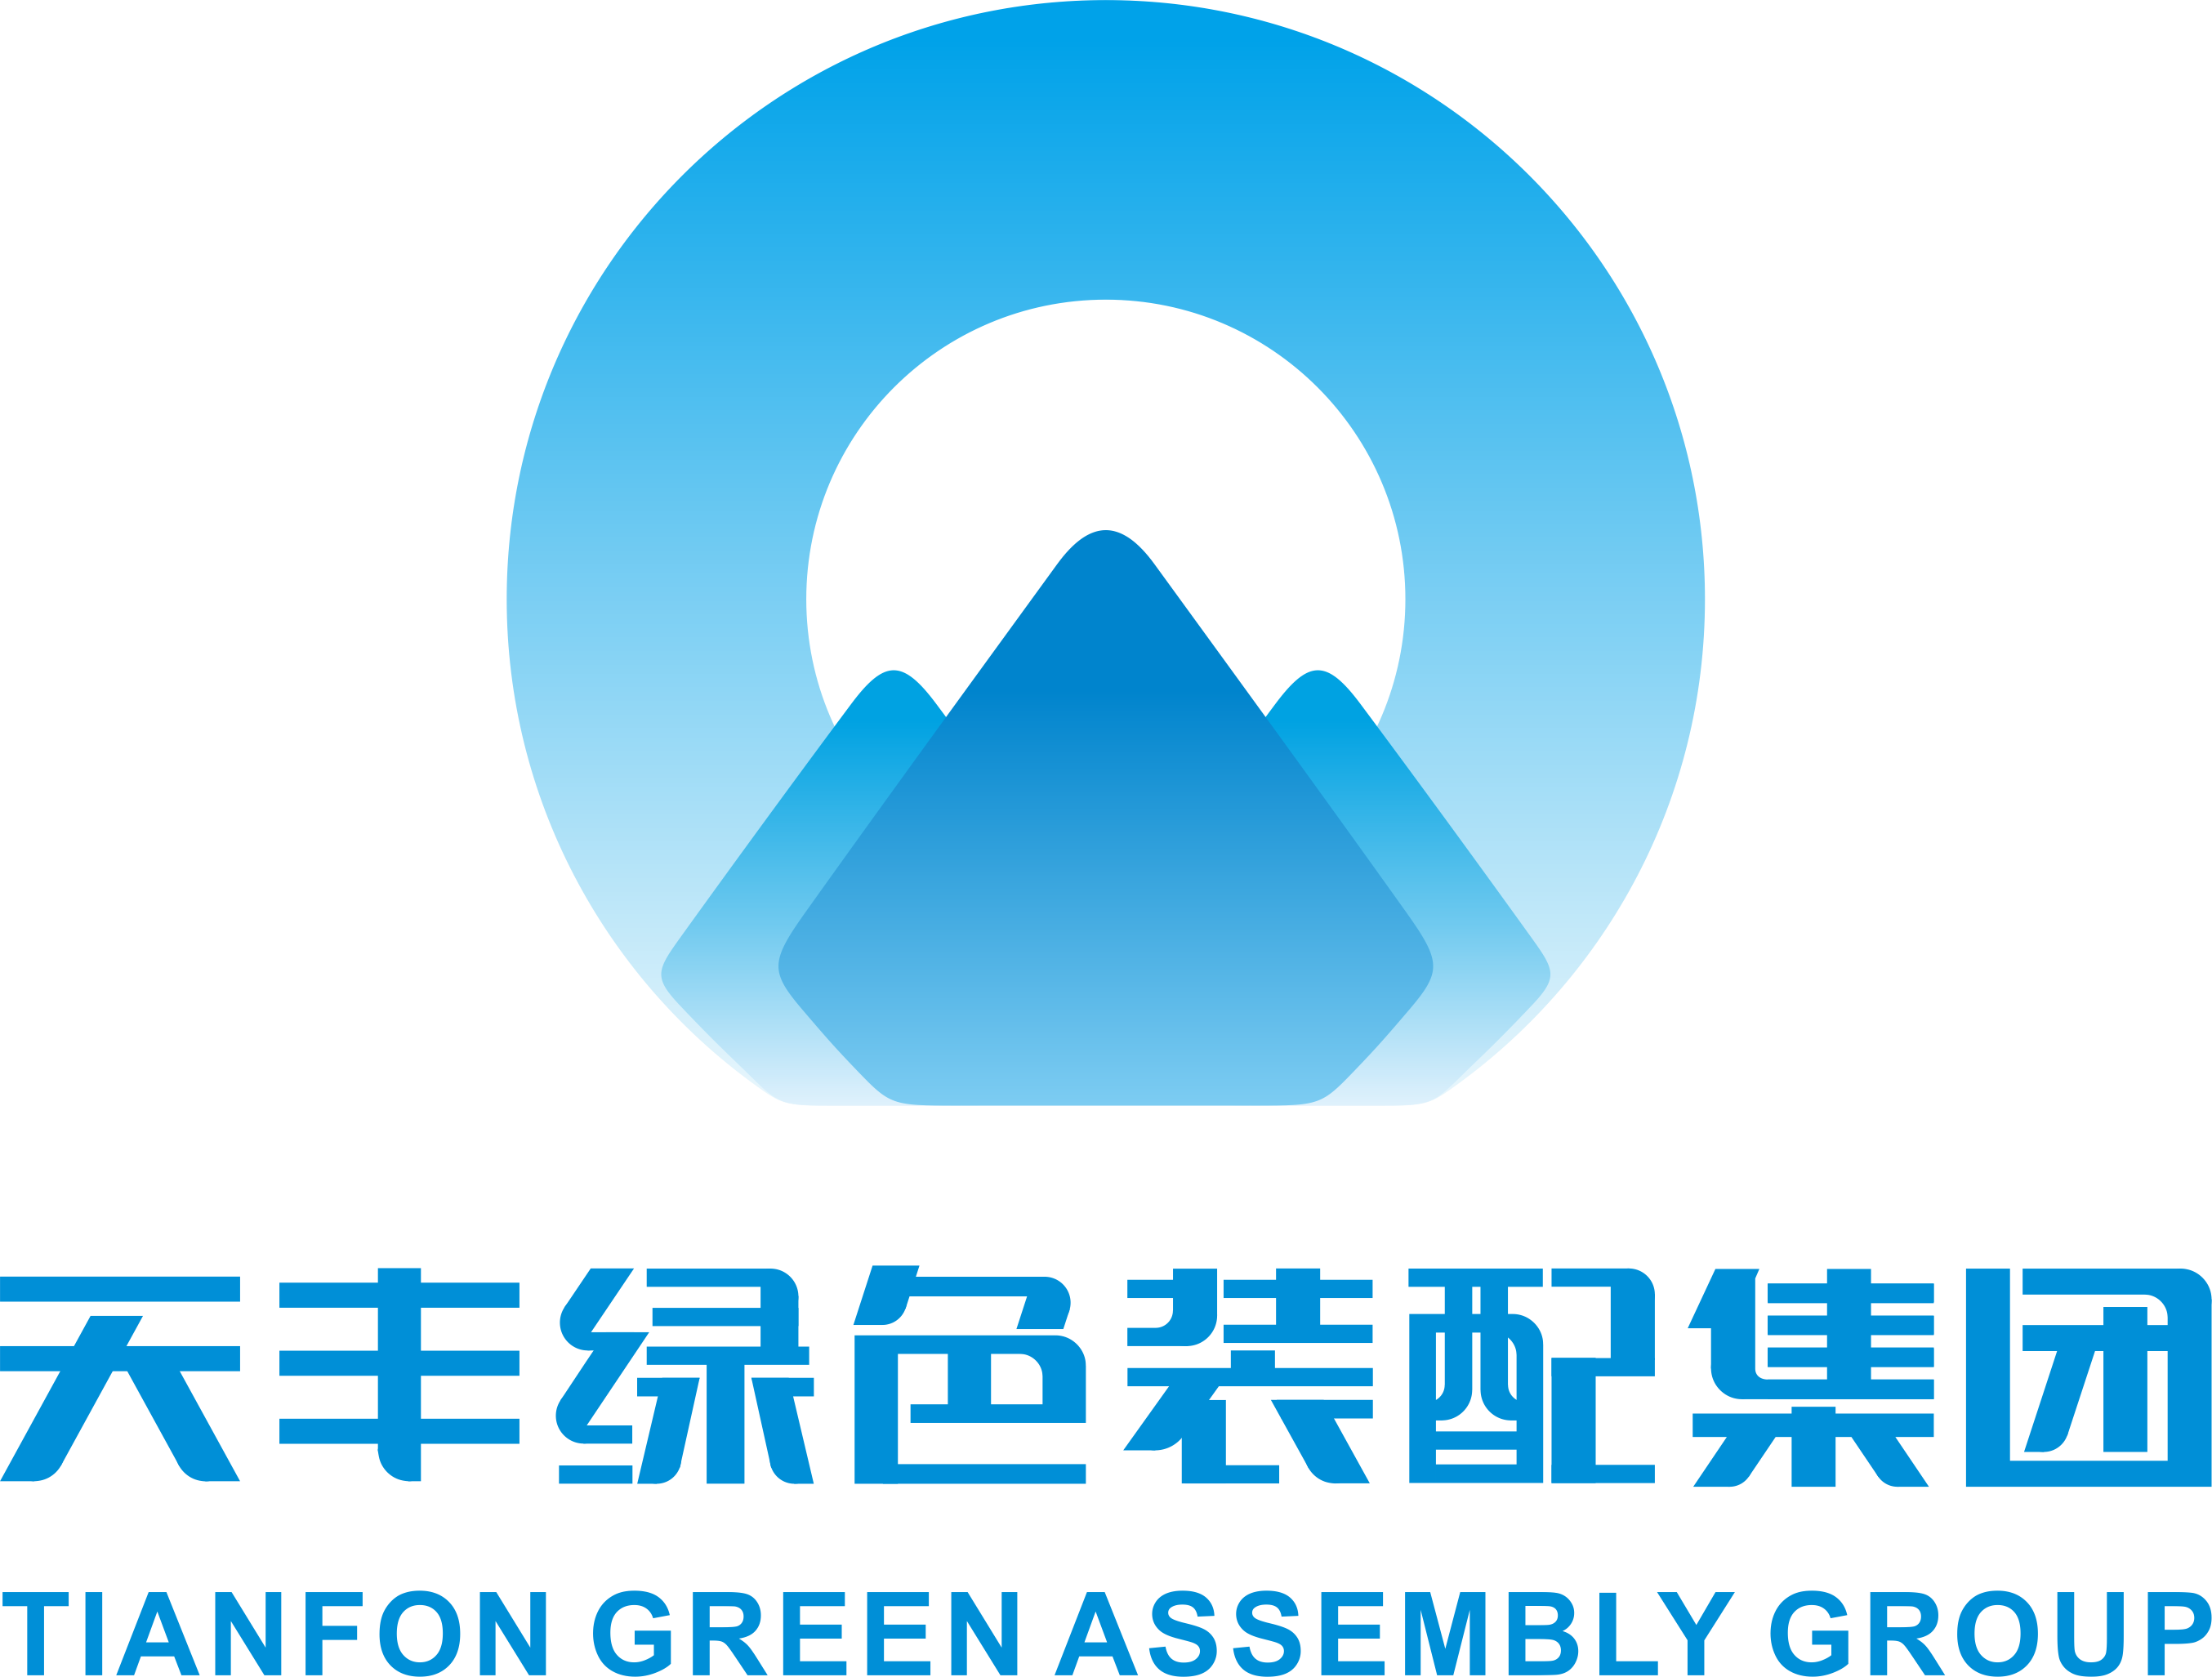 坚守绿色、品质发展，共创美好、智慧未来 ——中国金属围护系统行业倡议书